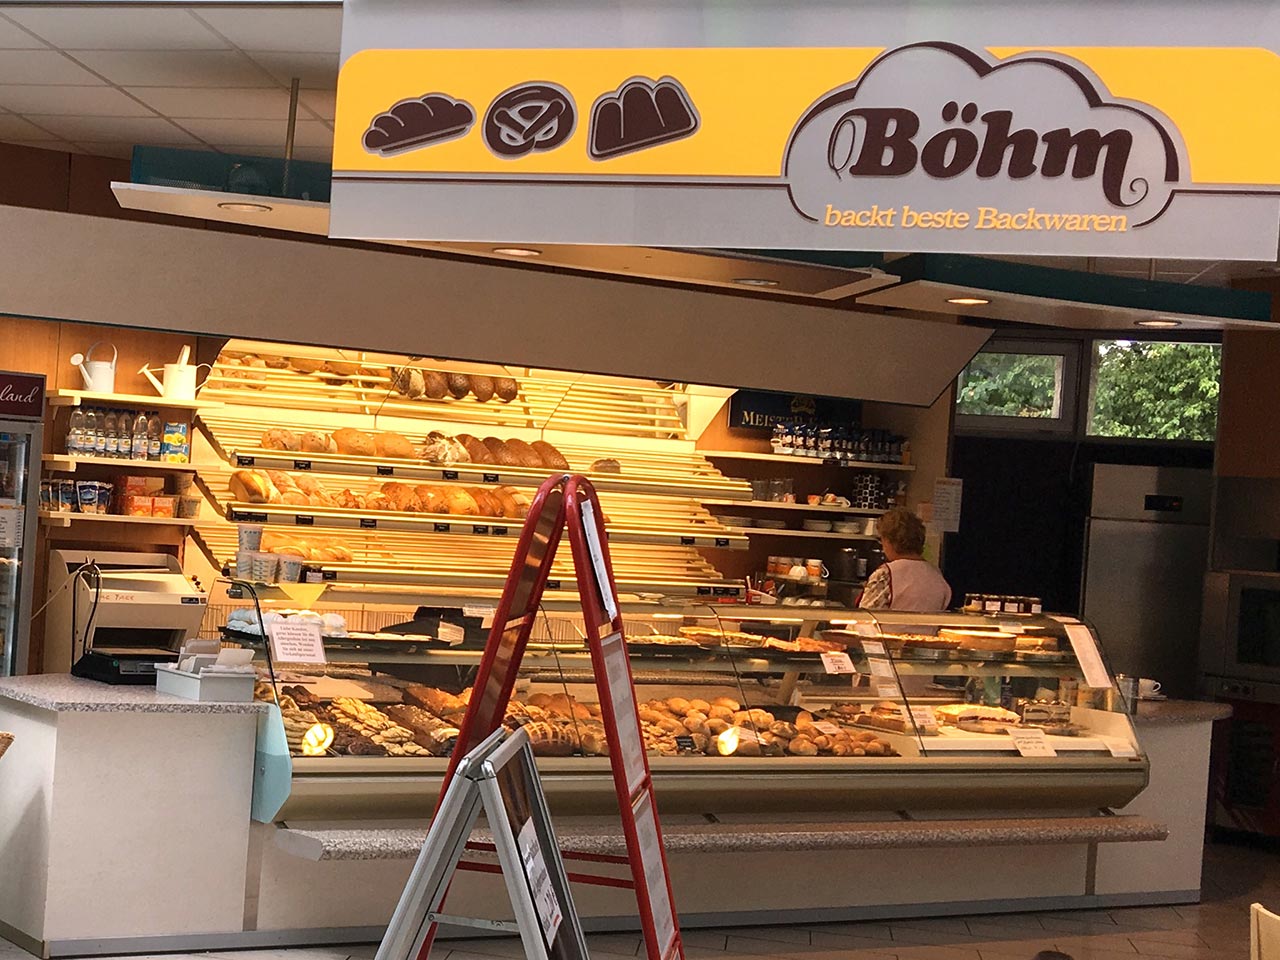 Bäckerei Böhm